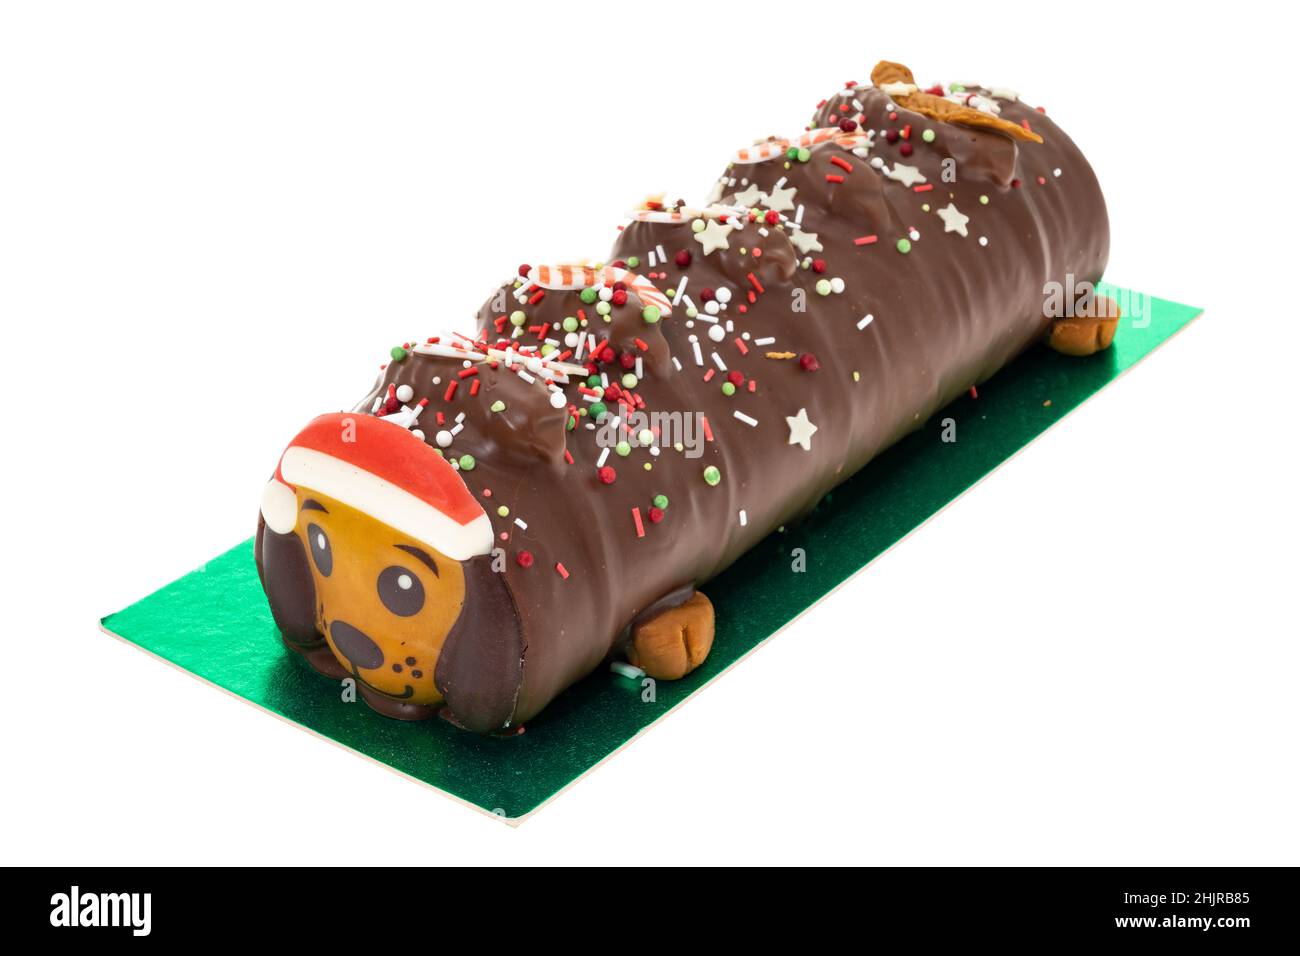 Una Navidad temática perro en forma de chocolate yule log - fondo blanco Foto de stock